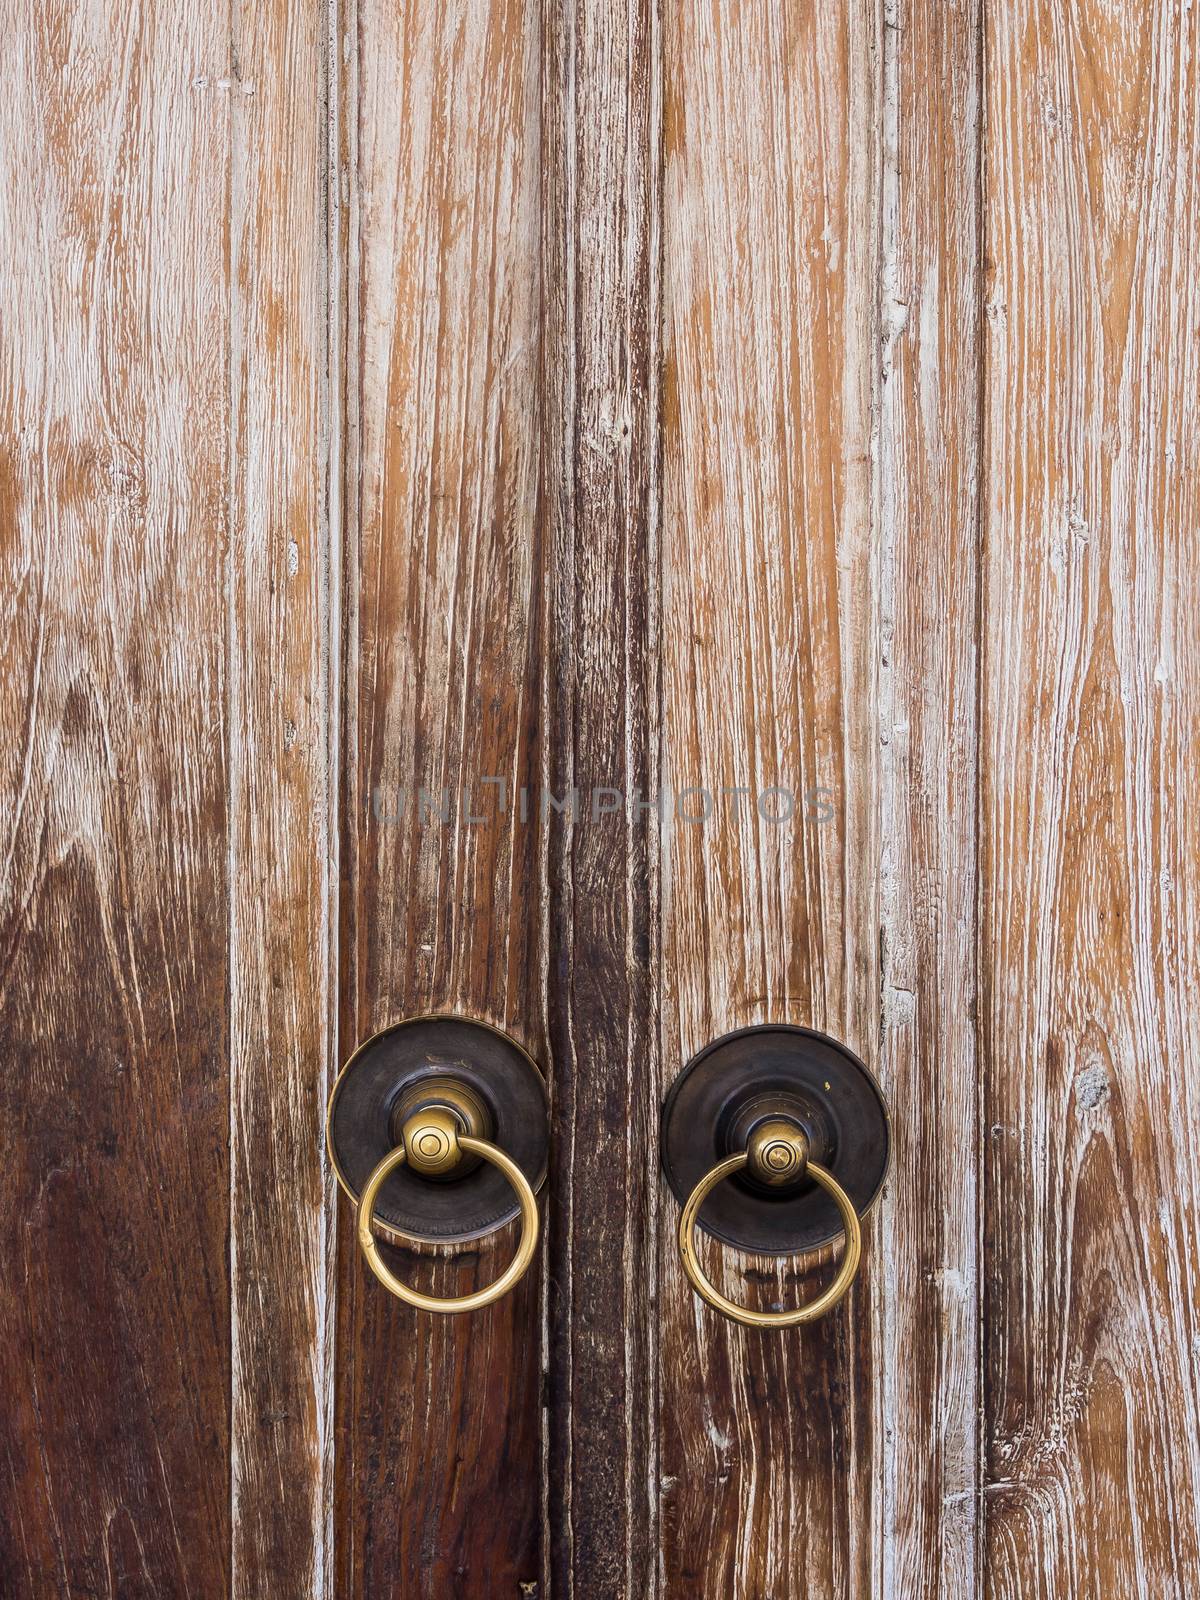 old vintage metal door ring handle knocker by simpleBE